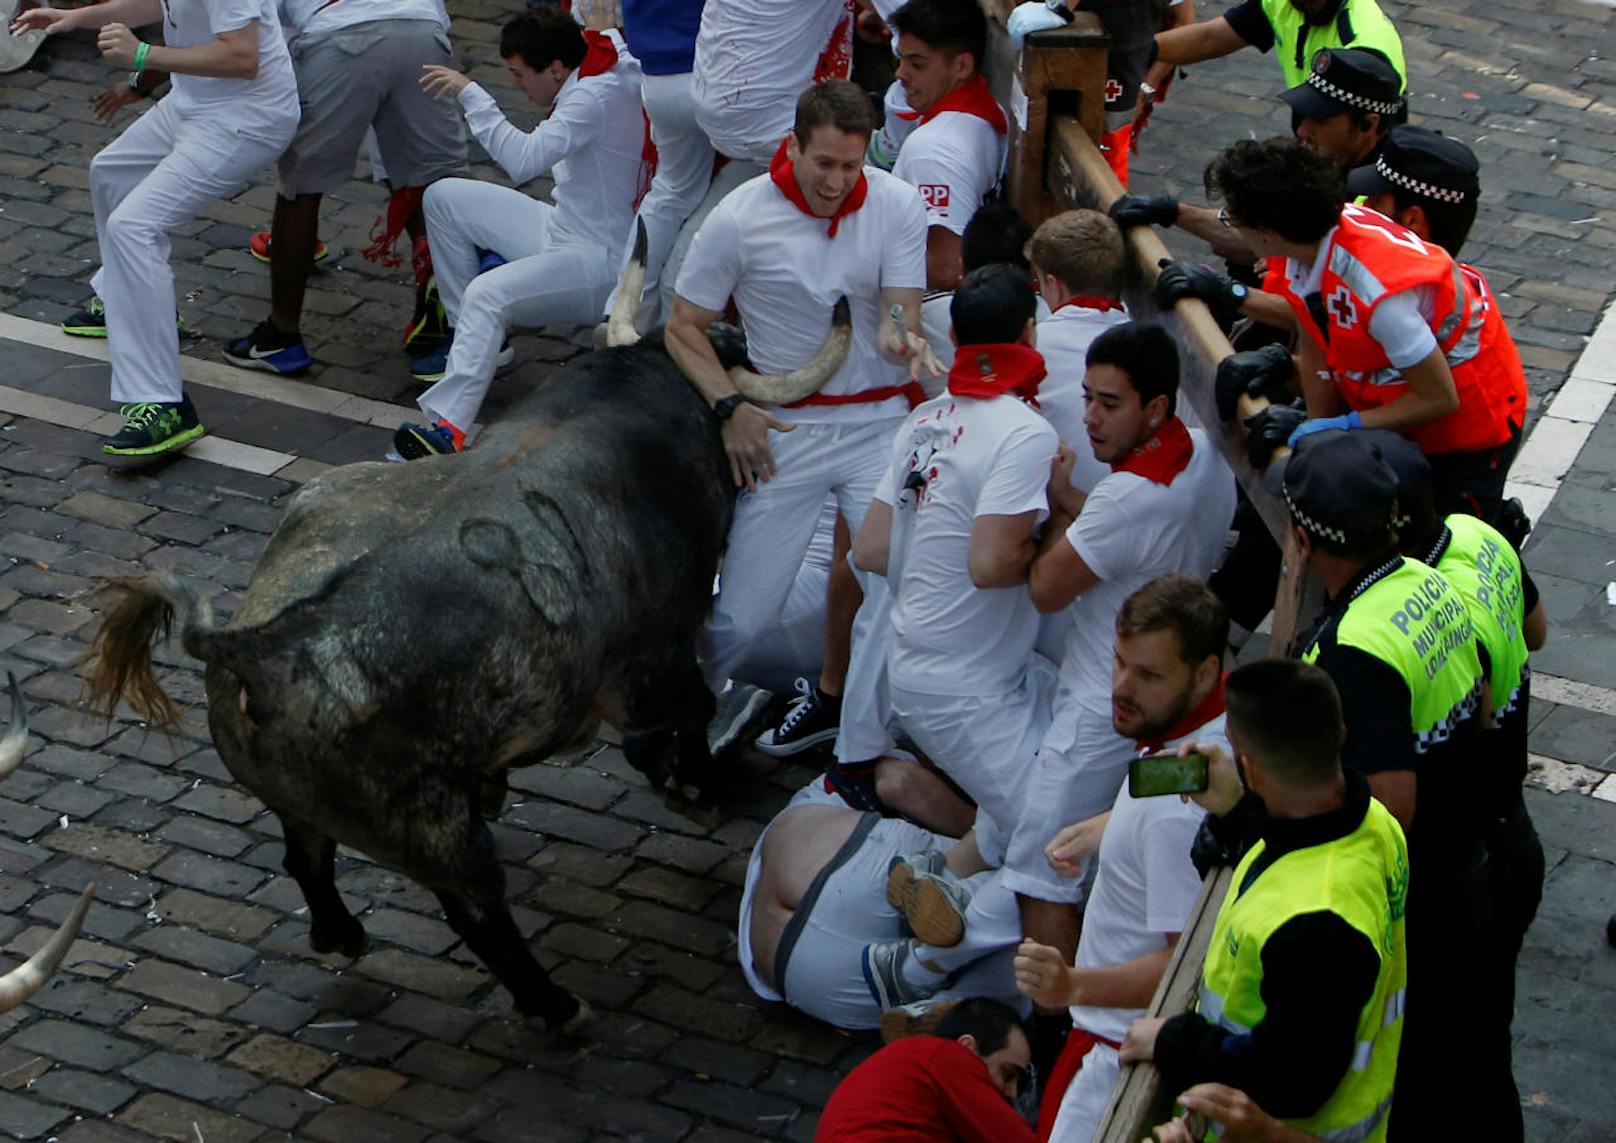 Bei der Stierhatz in Pamplona werden jedes Jahr mehrere Menschen verletzt